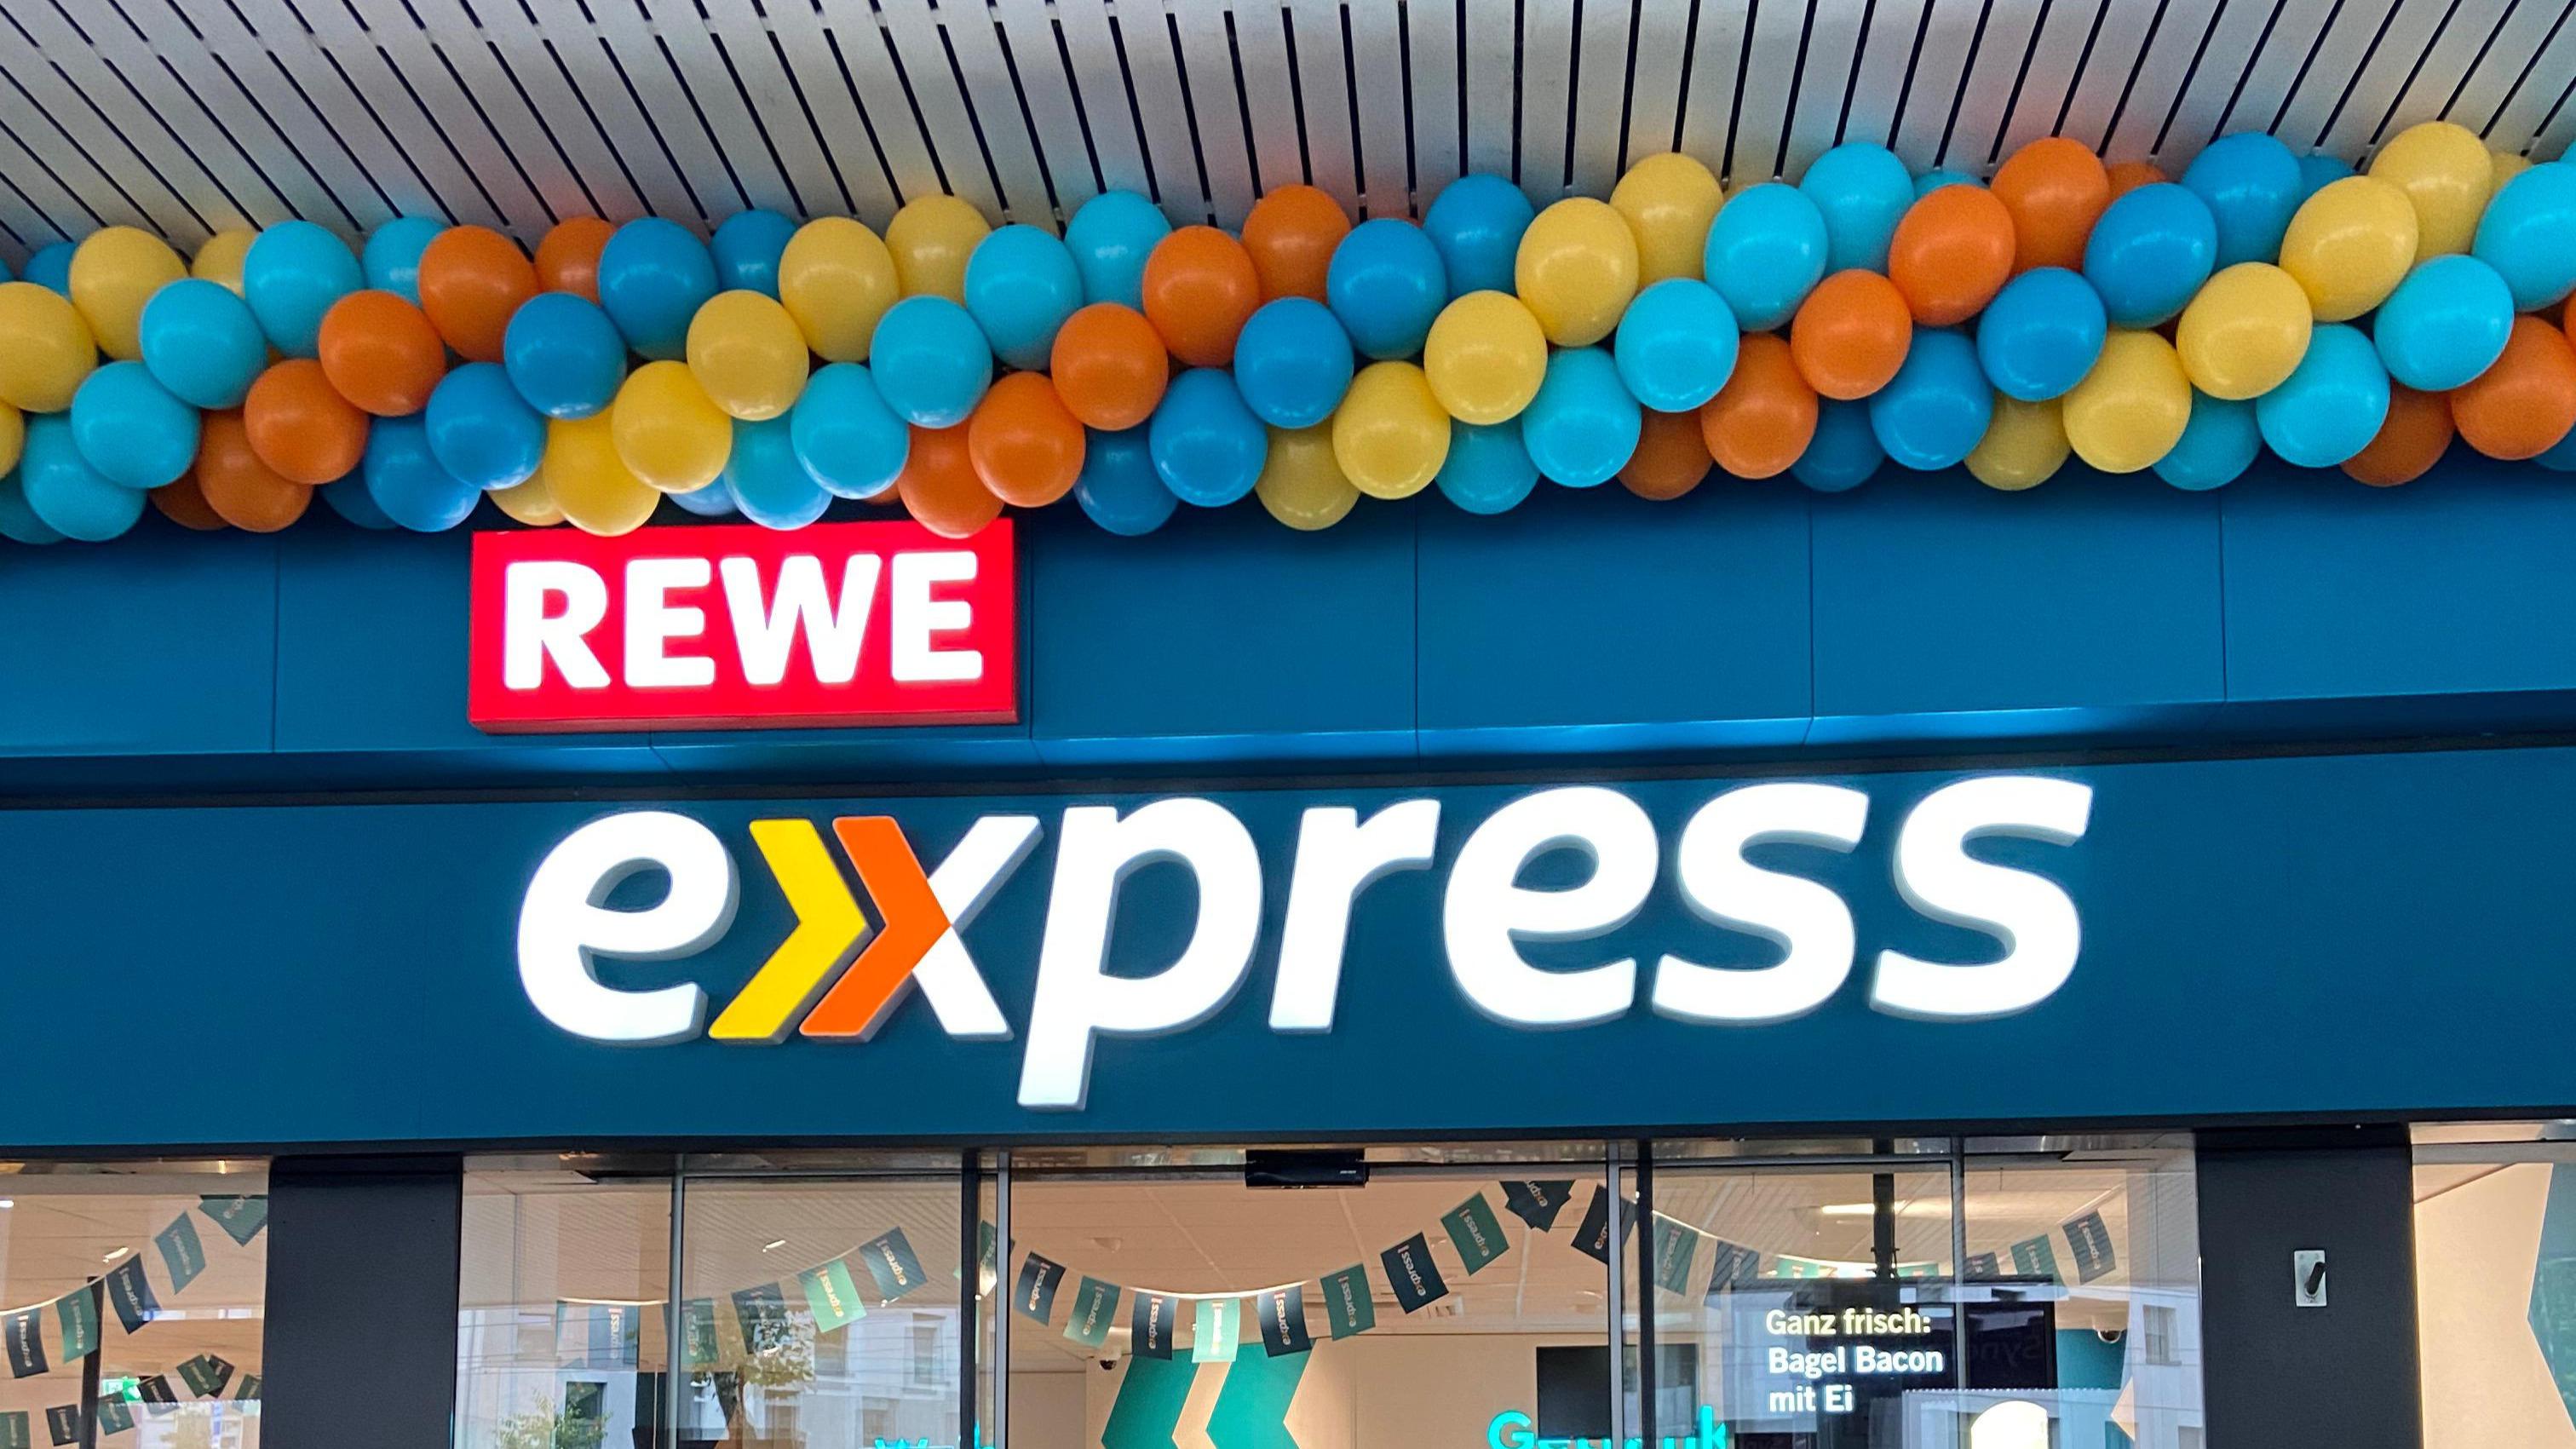 Bild 3 REWE express in Freiburg im Breisgau